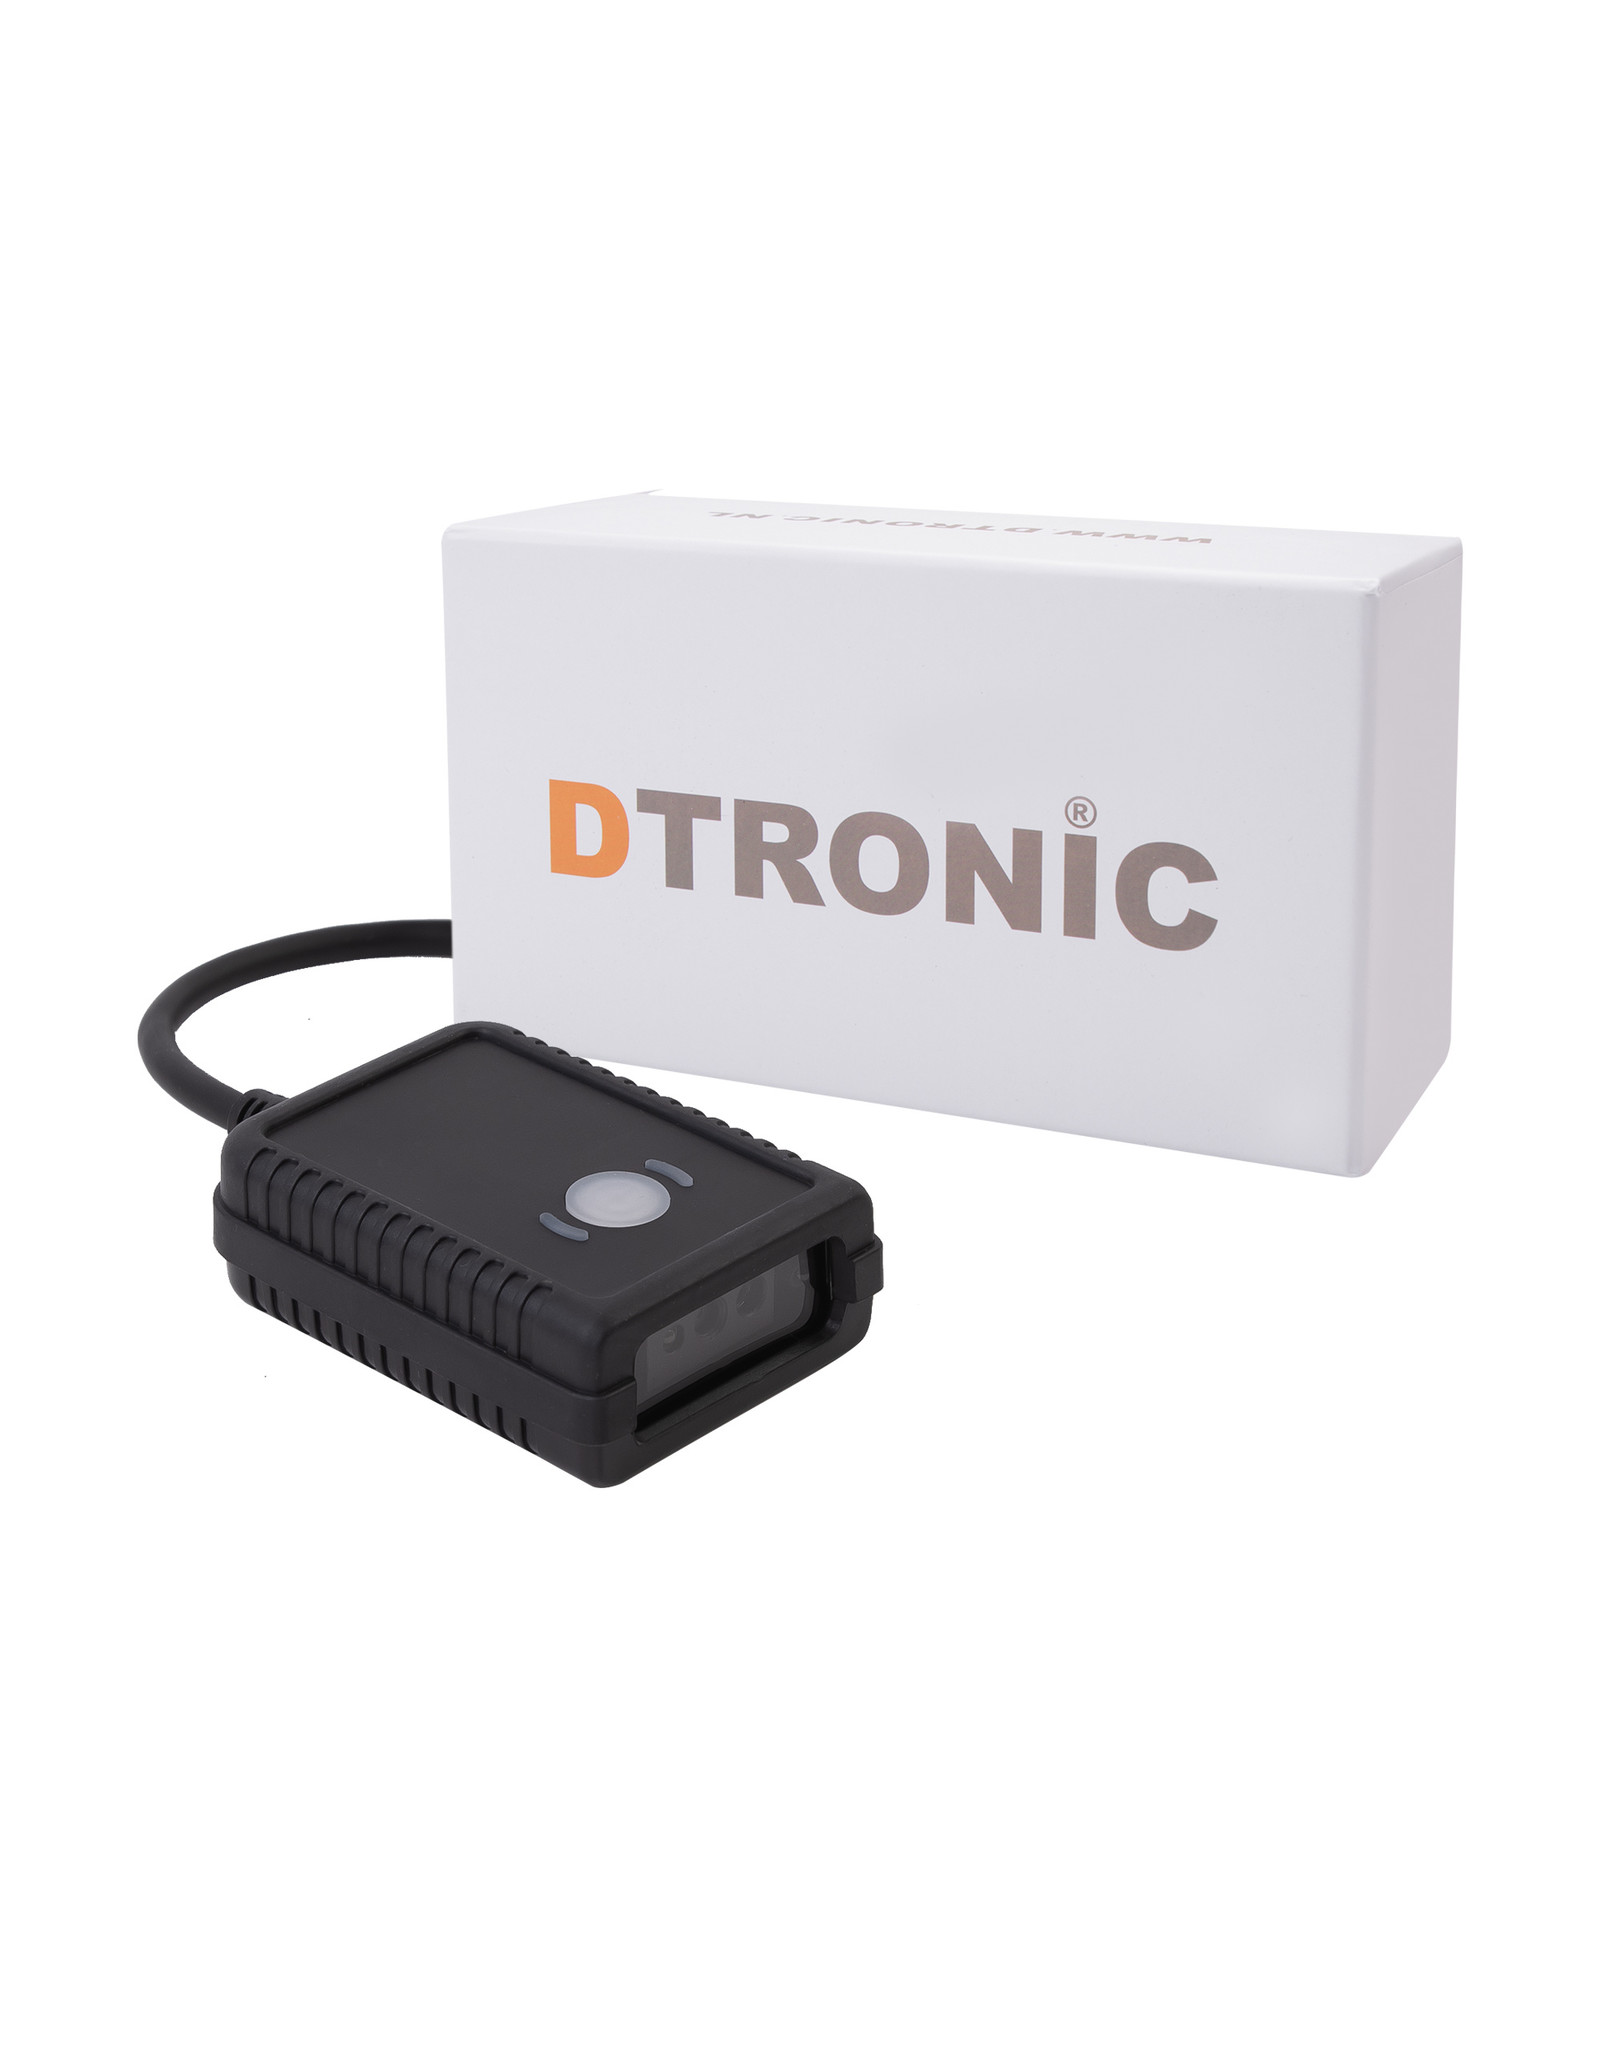 DTRONIC DTRONIC DF4200  - Inbouwscanner  - Compact & Lichtgewicht  - USB Aansluiting